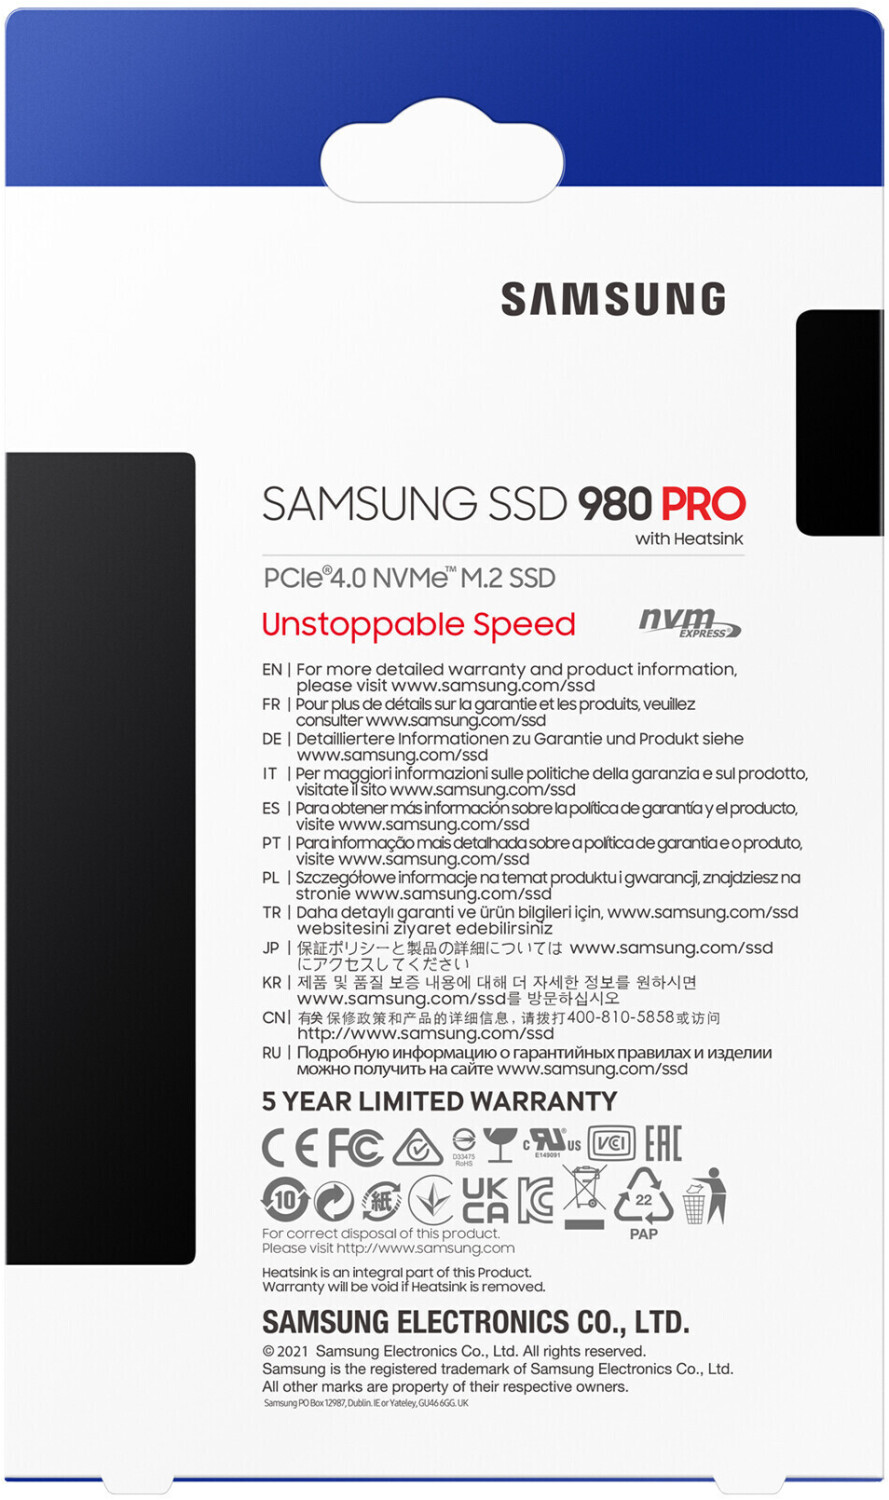 Disque dur ssd interne 980 pro 2 to + dissipateur noir Samsung